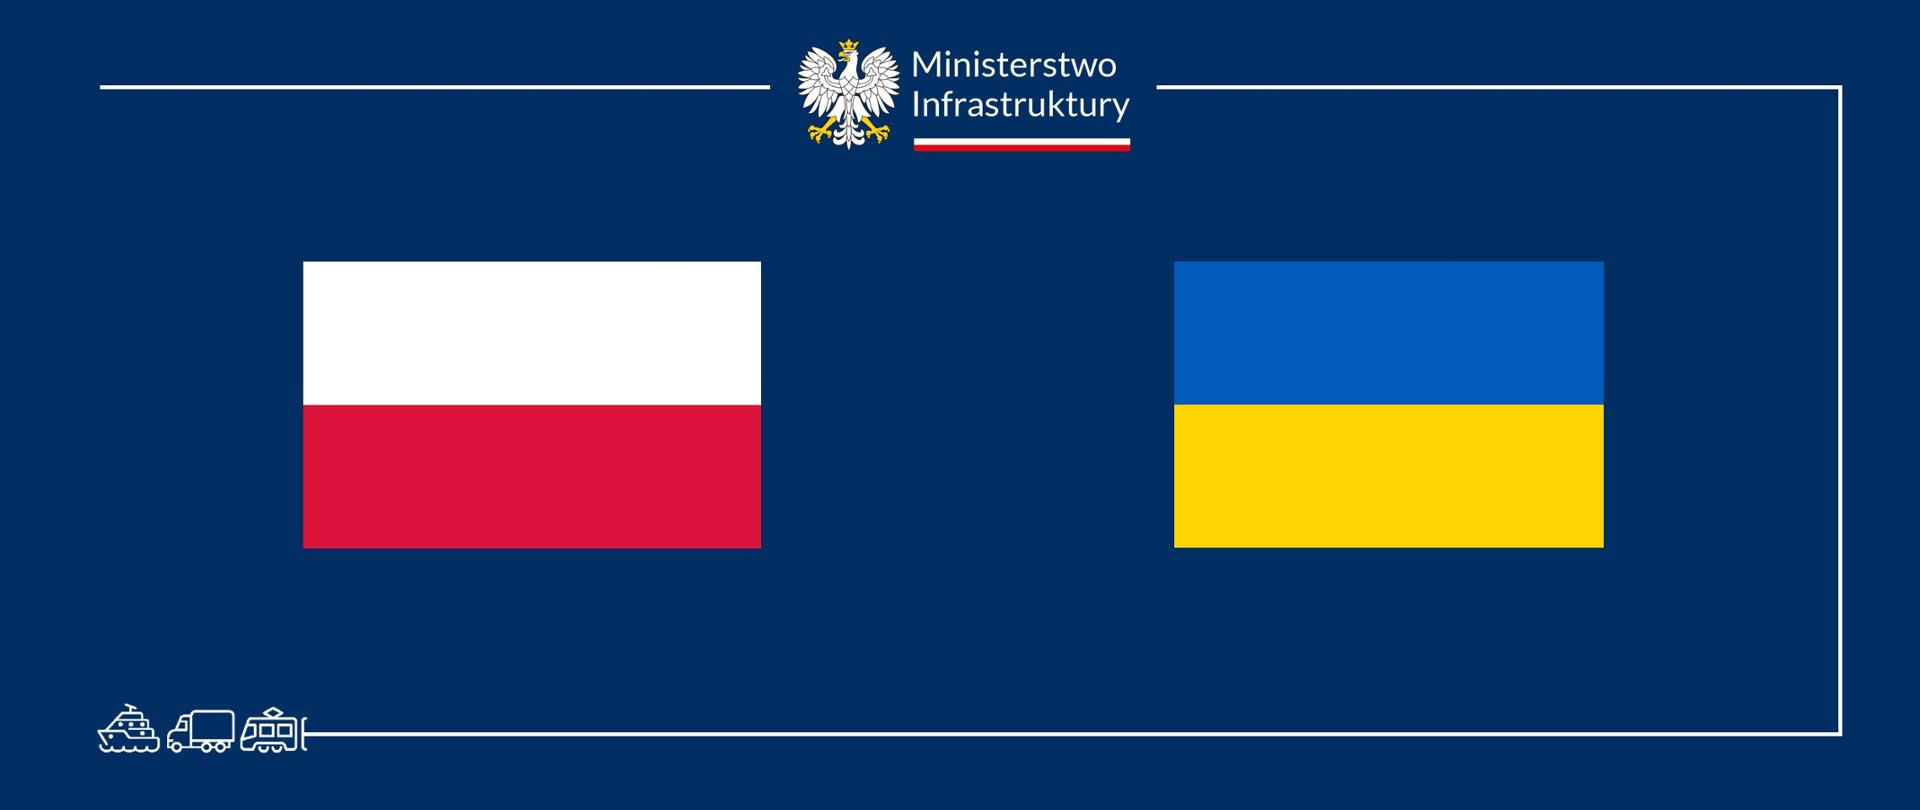 Spotkanie ministrów infrastruktury Polski i Ukrainy